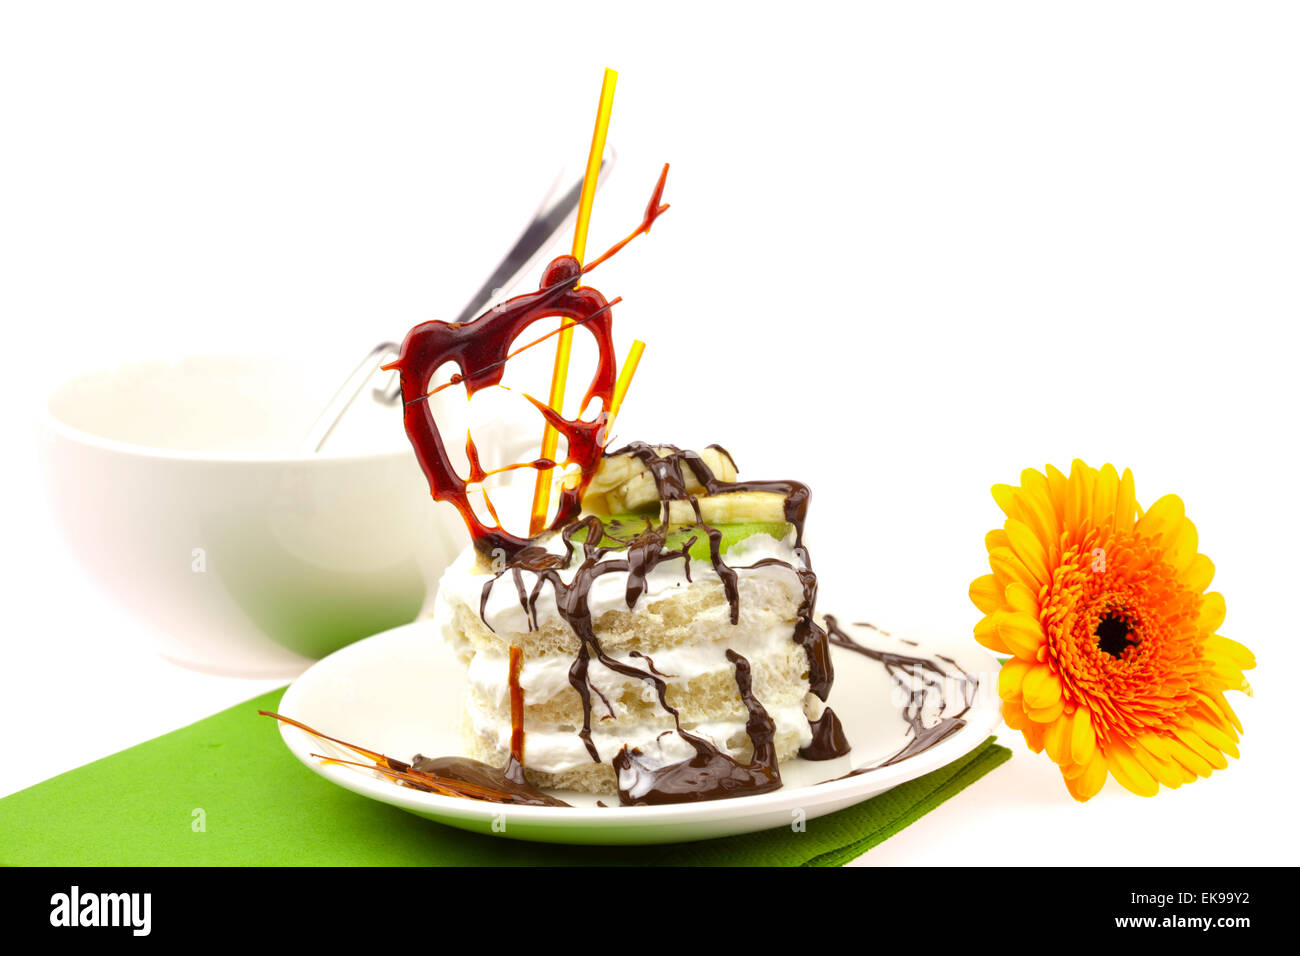 Kuchen mit Creme Caramel Herz und Gerbera auf einem grünen Tuch liegend Stockfoto